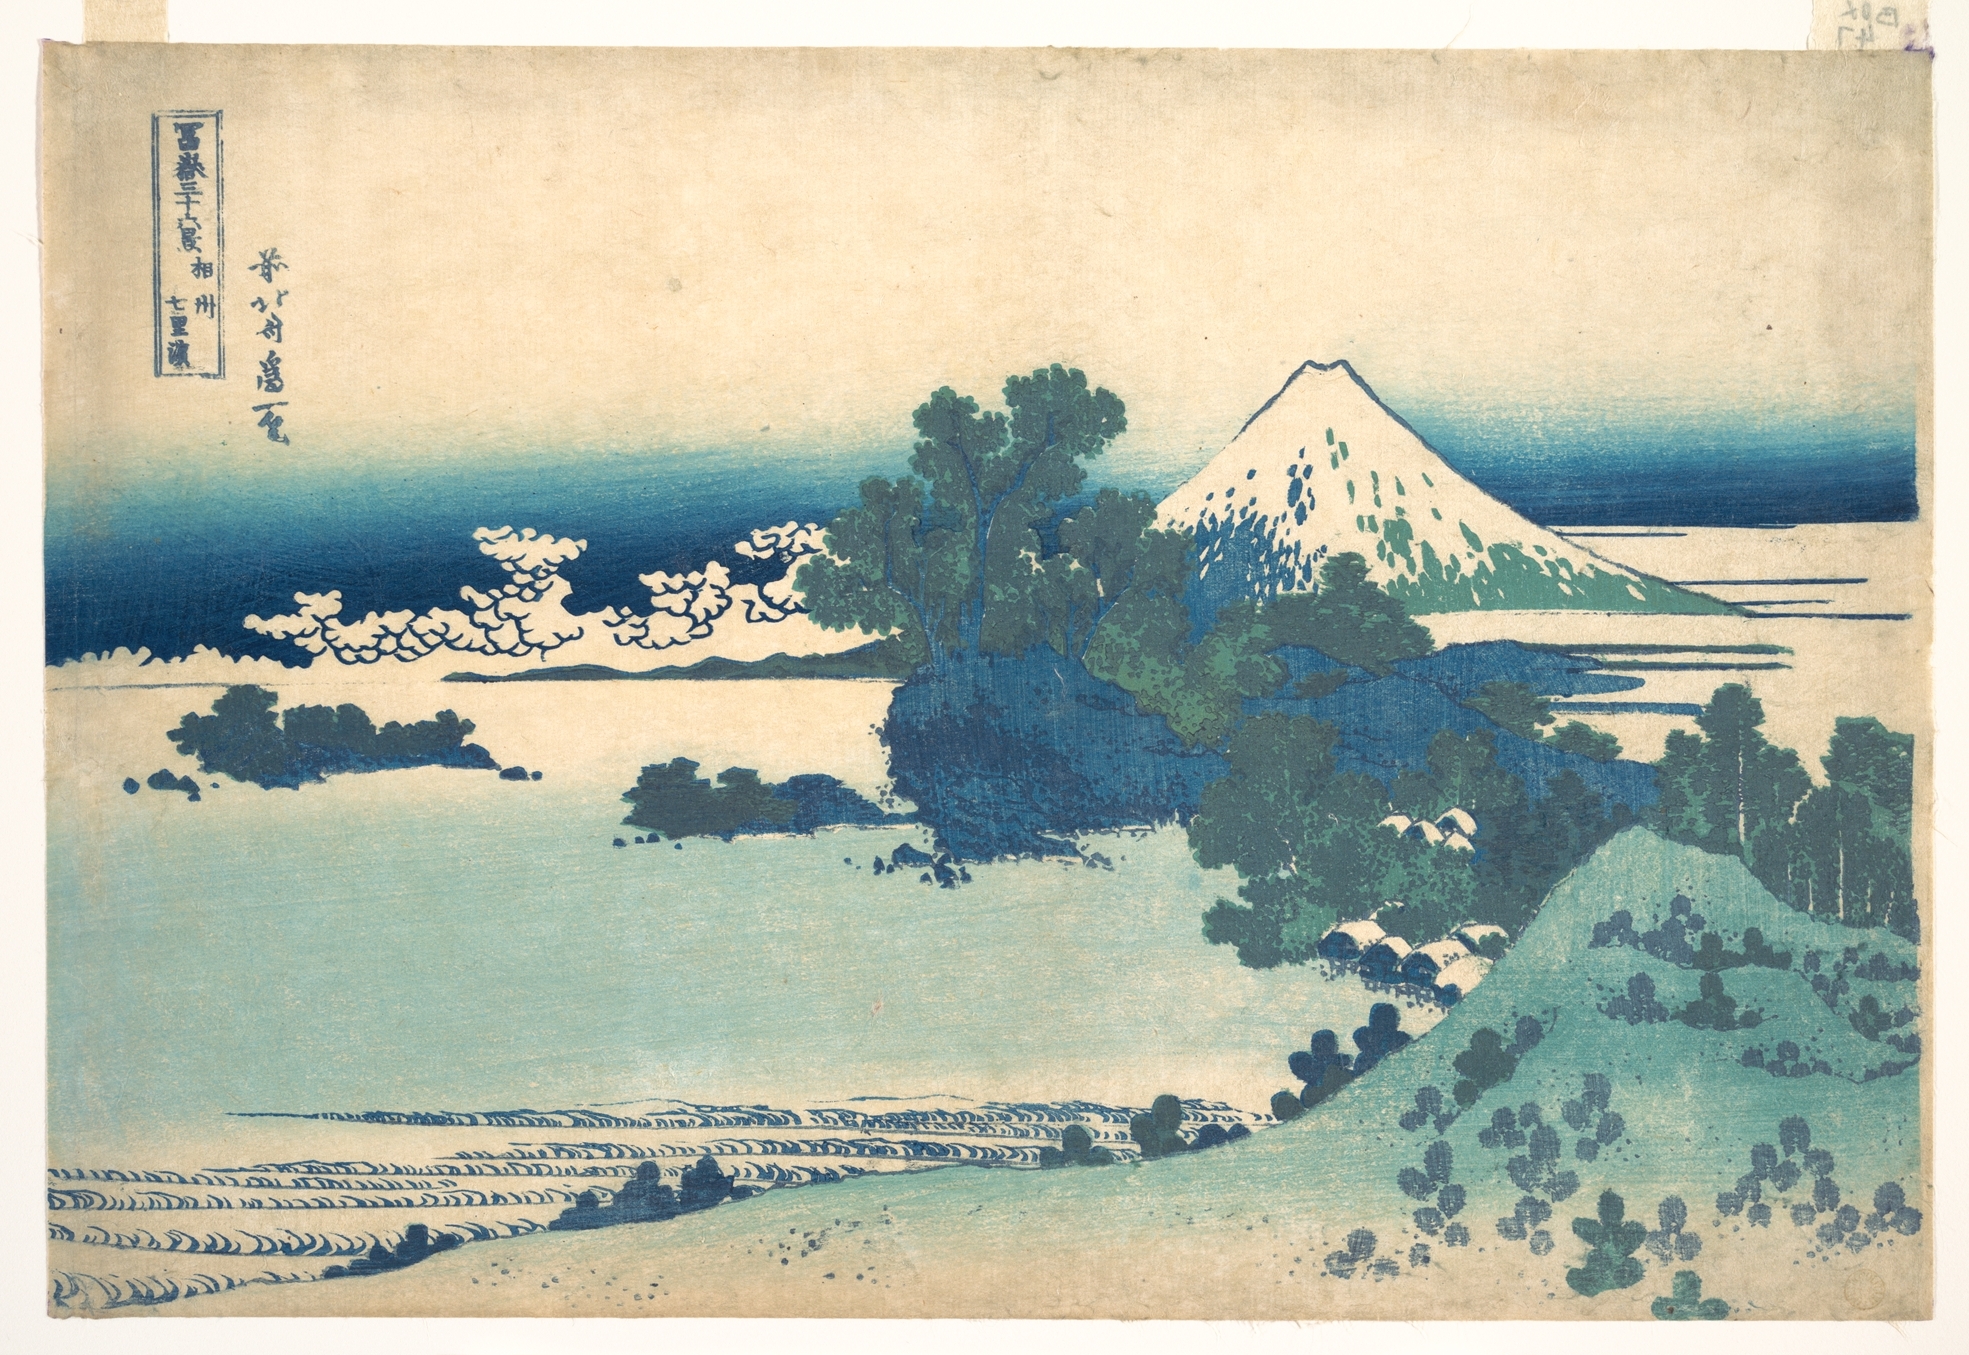 Sagami Province, by Hokusai